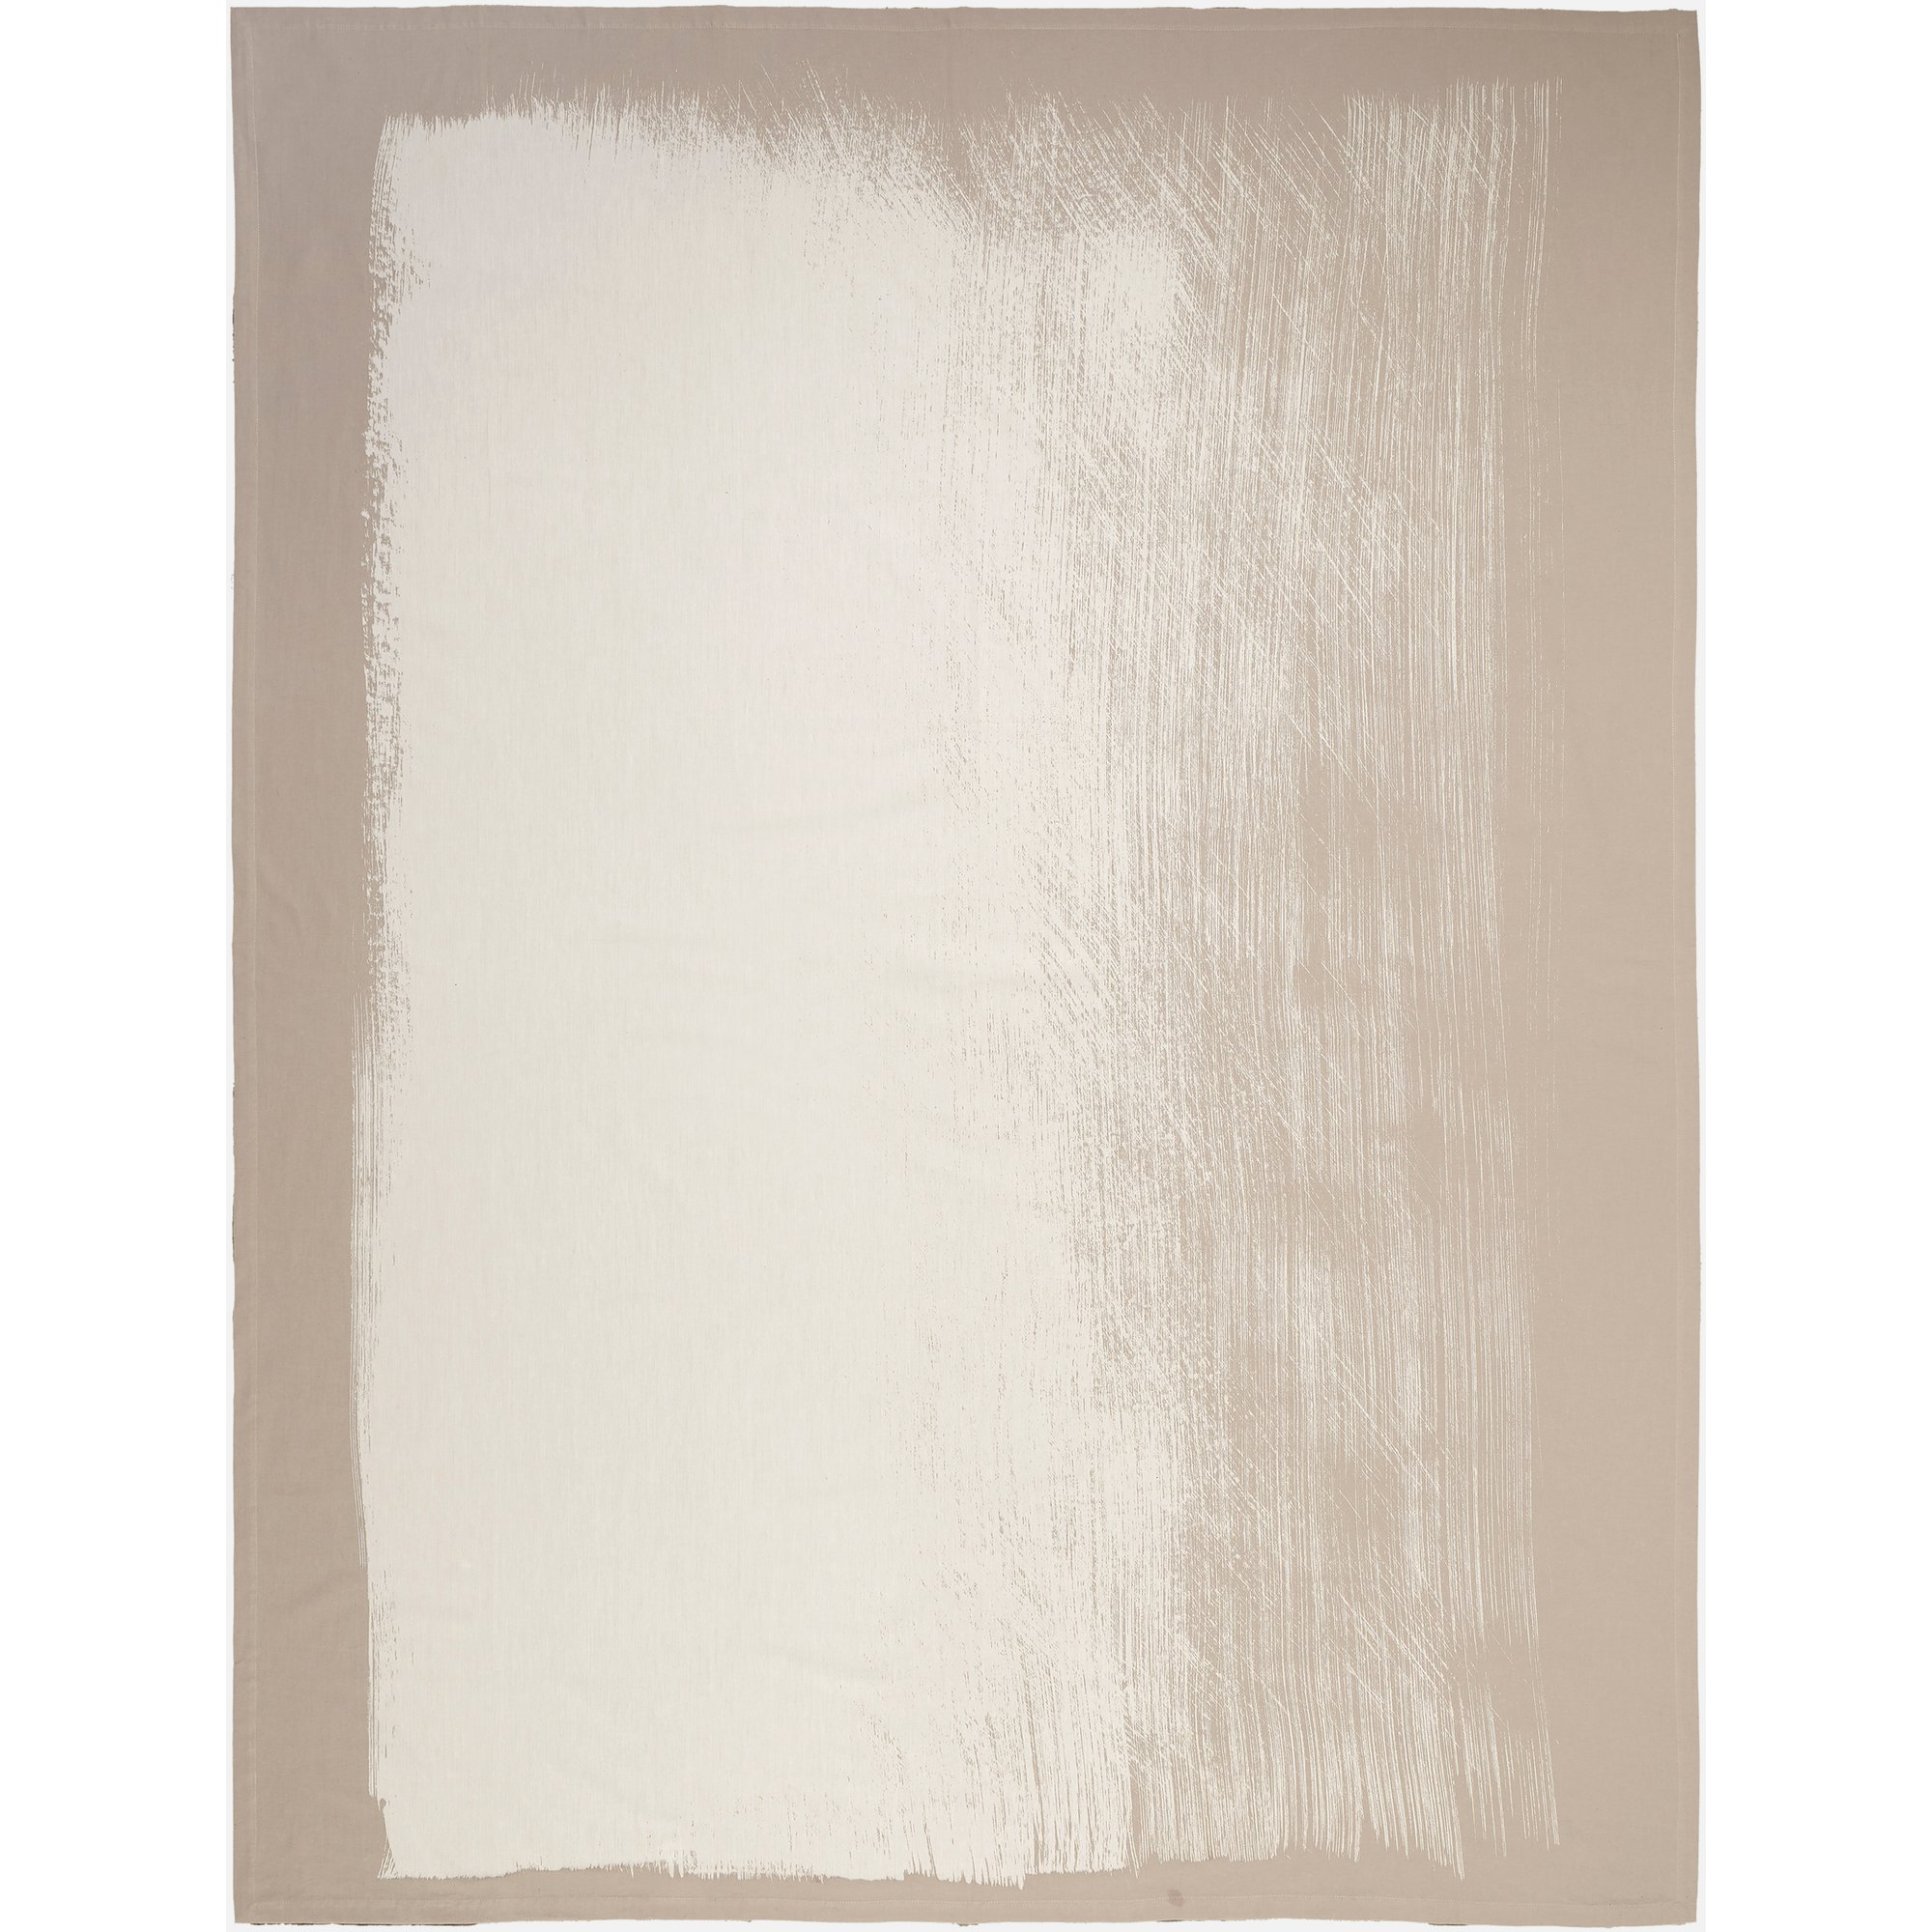 Marimekko Kuiskaus borddug, 156x210 cm, grå/hvid